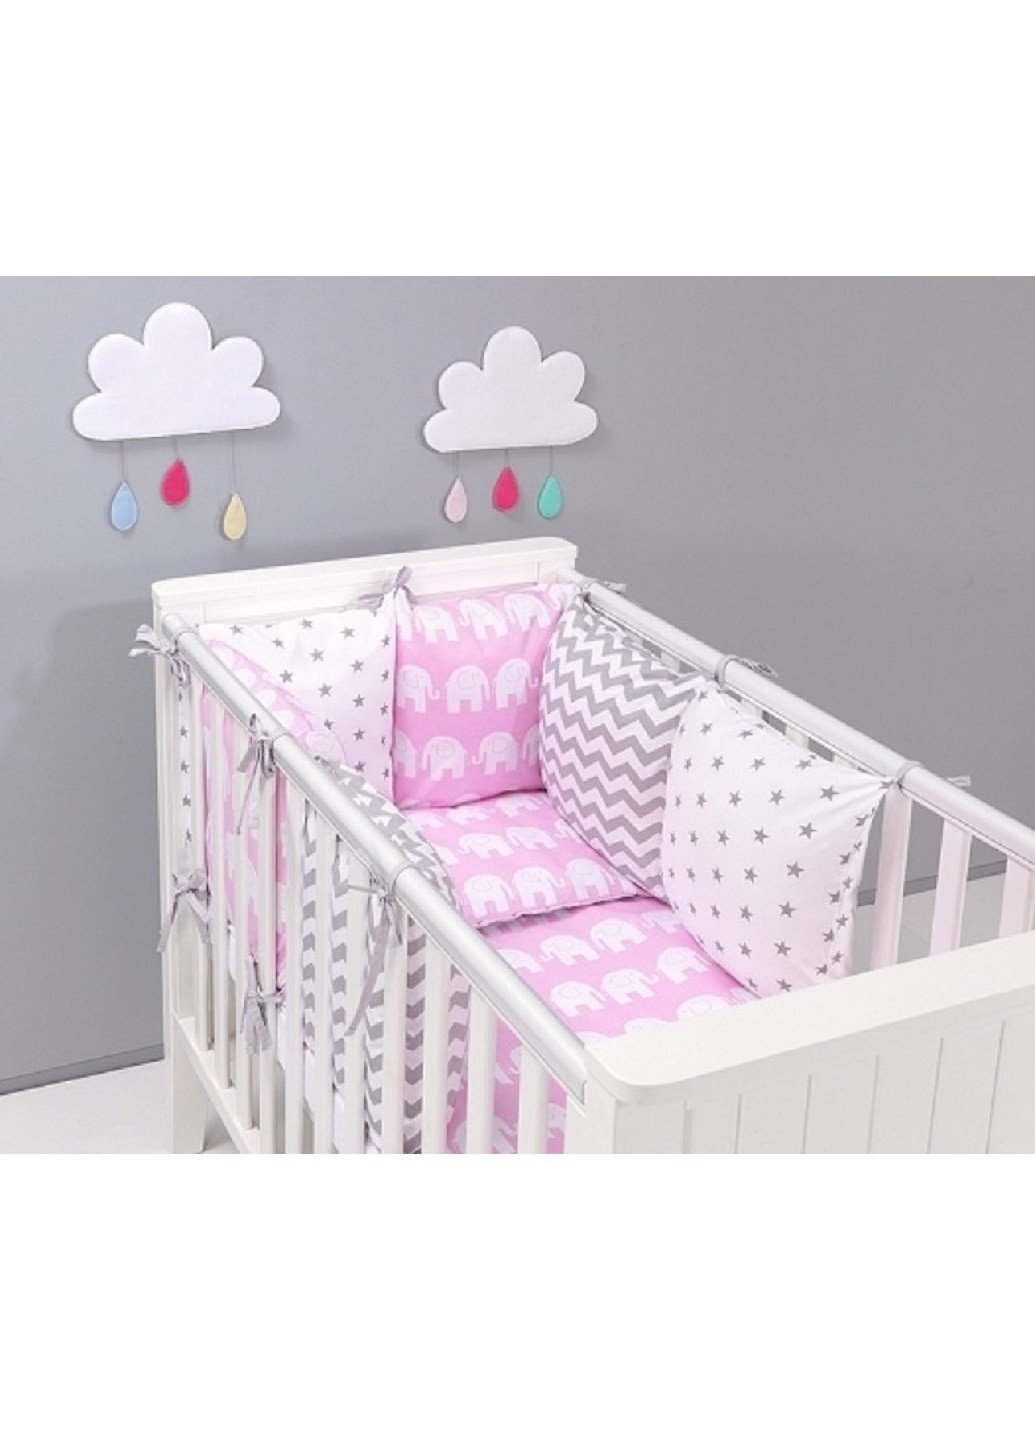 Комплект в детскую кроватку кровать люльку набор бортики защита на три стороны постельное белье ручной работы (28601-Нов) Unbranded (253255914)